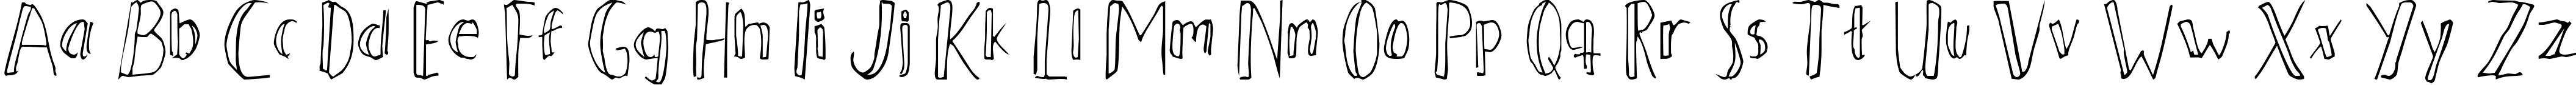 Пример написания английского алфавита шрифтом Ahnberg